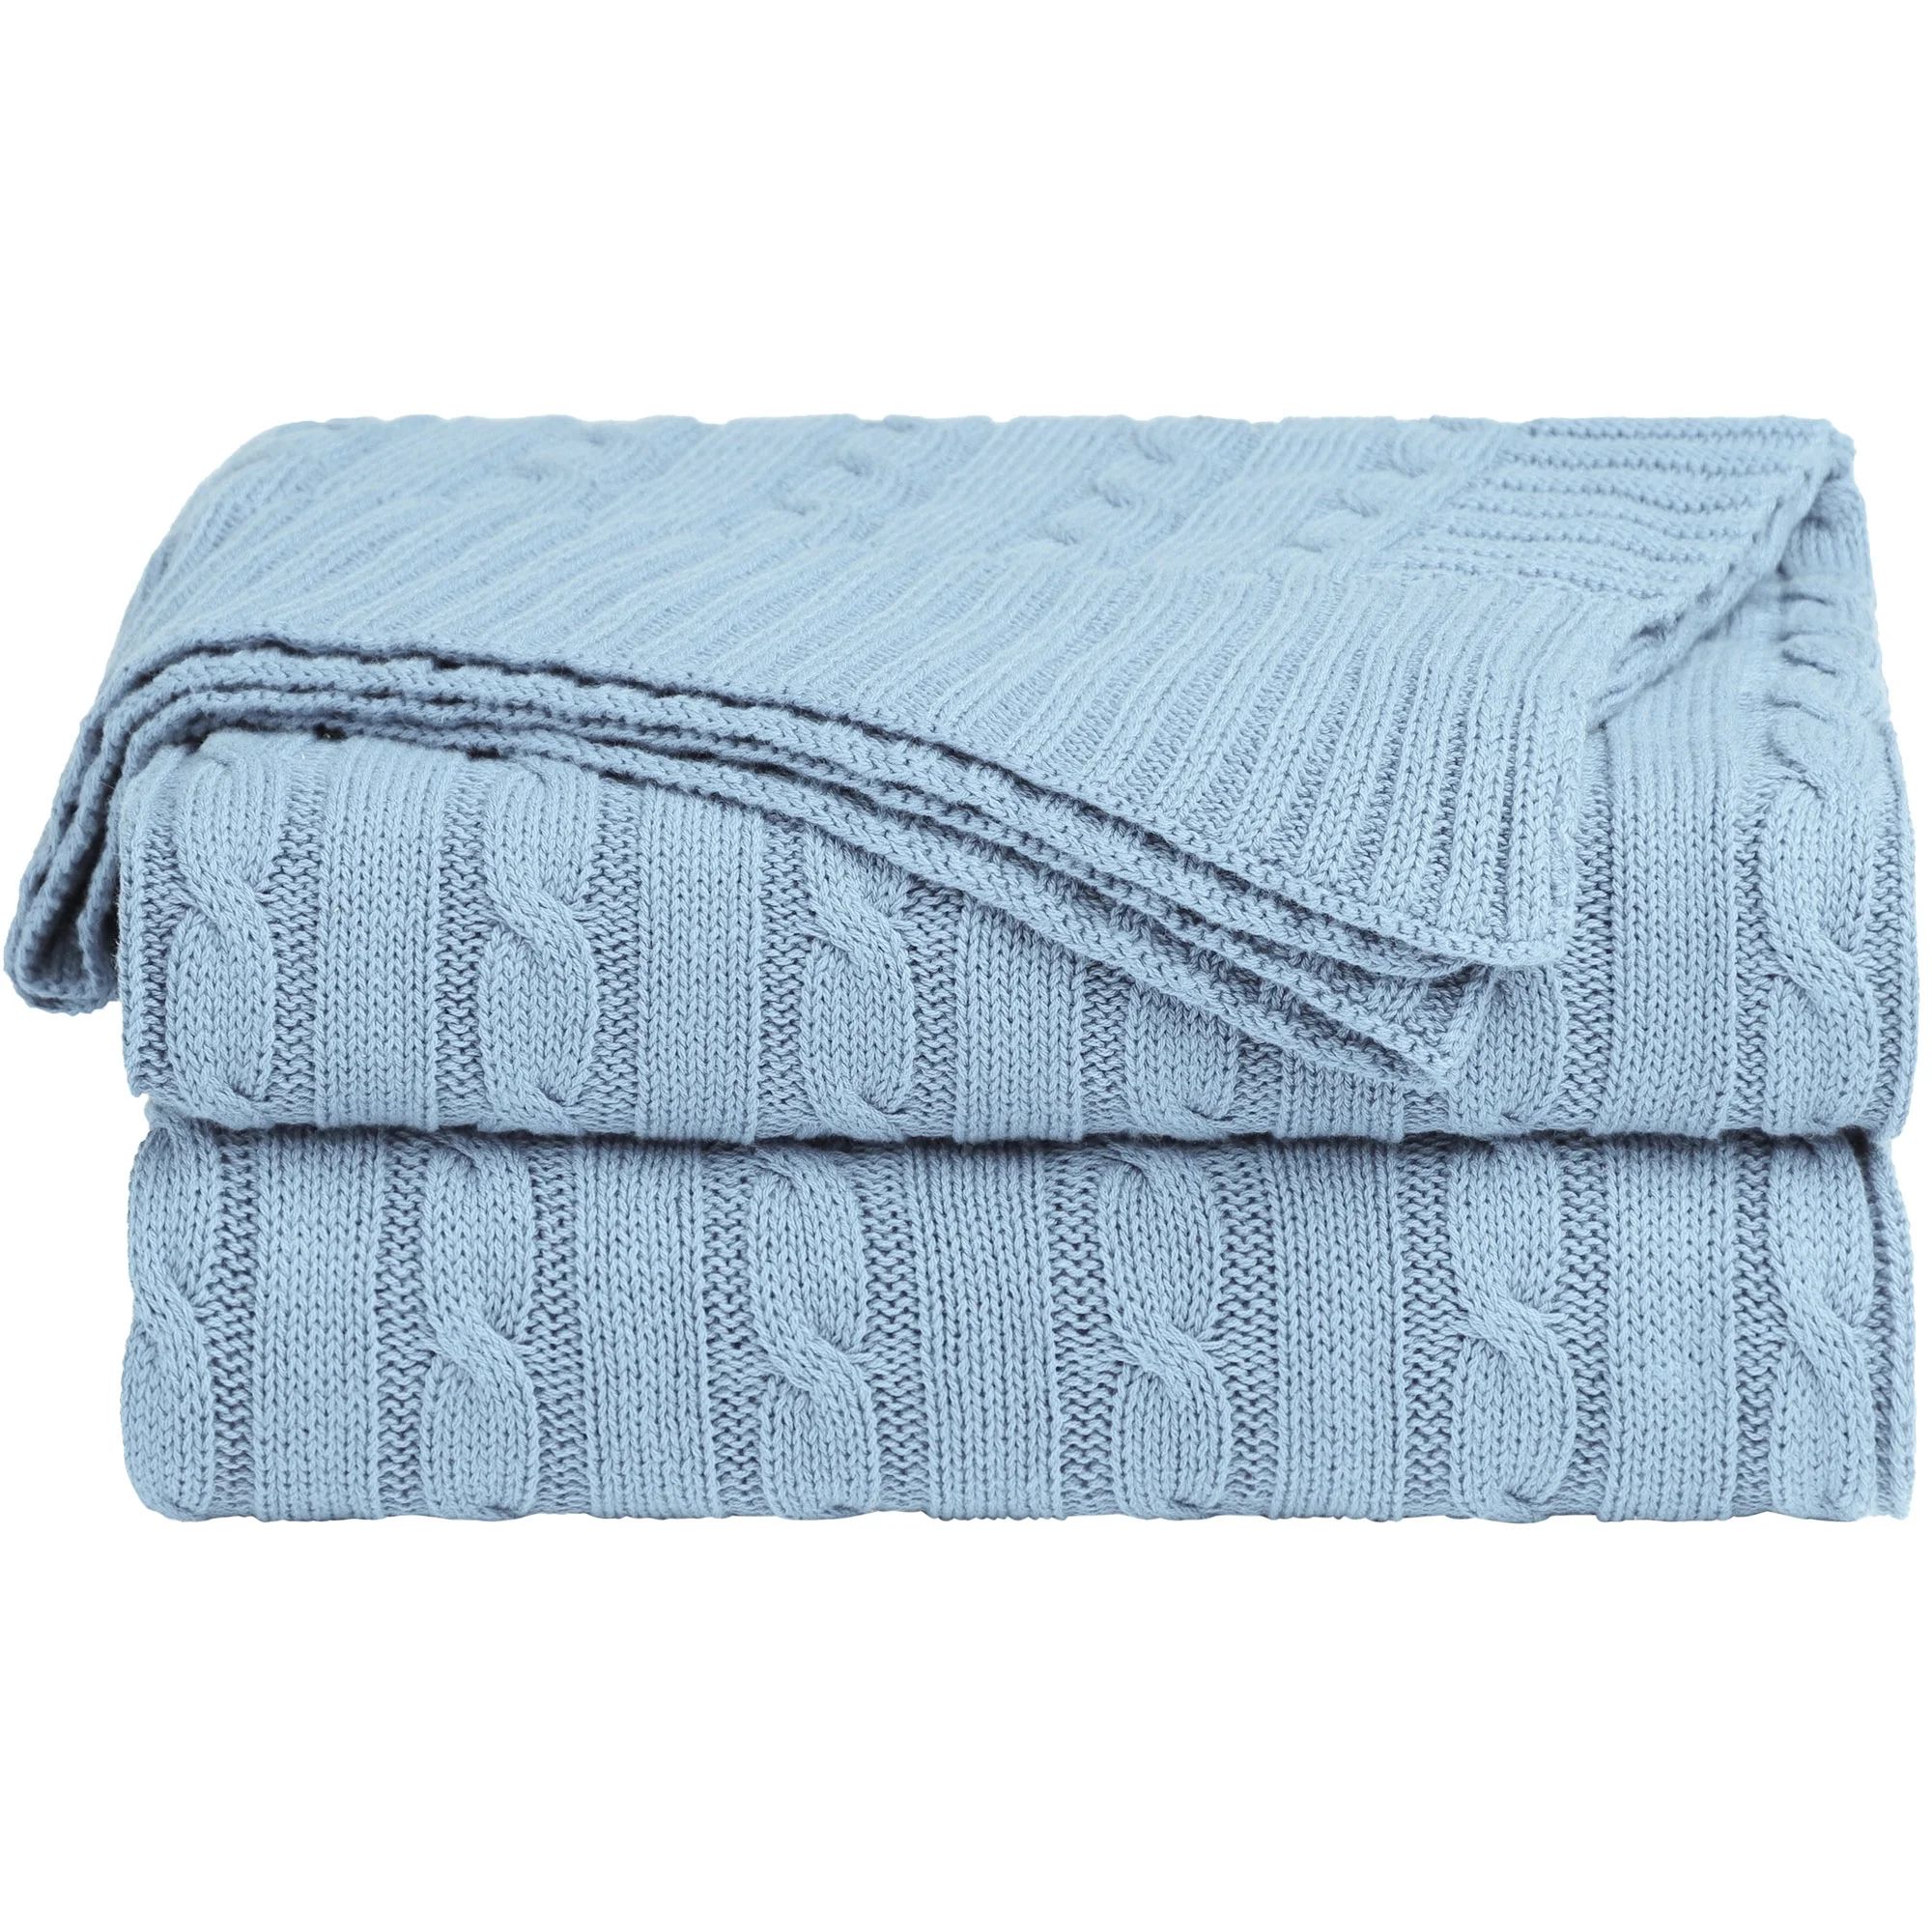 Unique Bargains 100% Cotton Cable Knit Throw Bed Blanket Pale Blue 51" x 59" | Walmart (US)